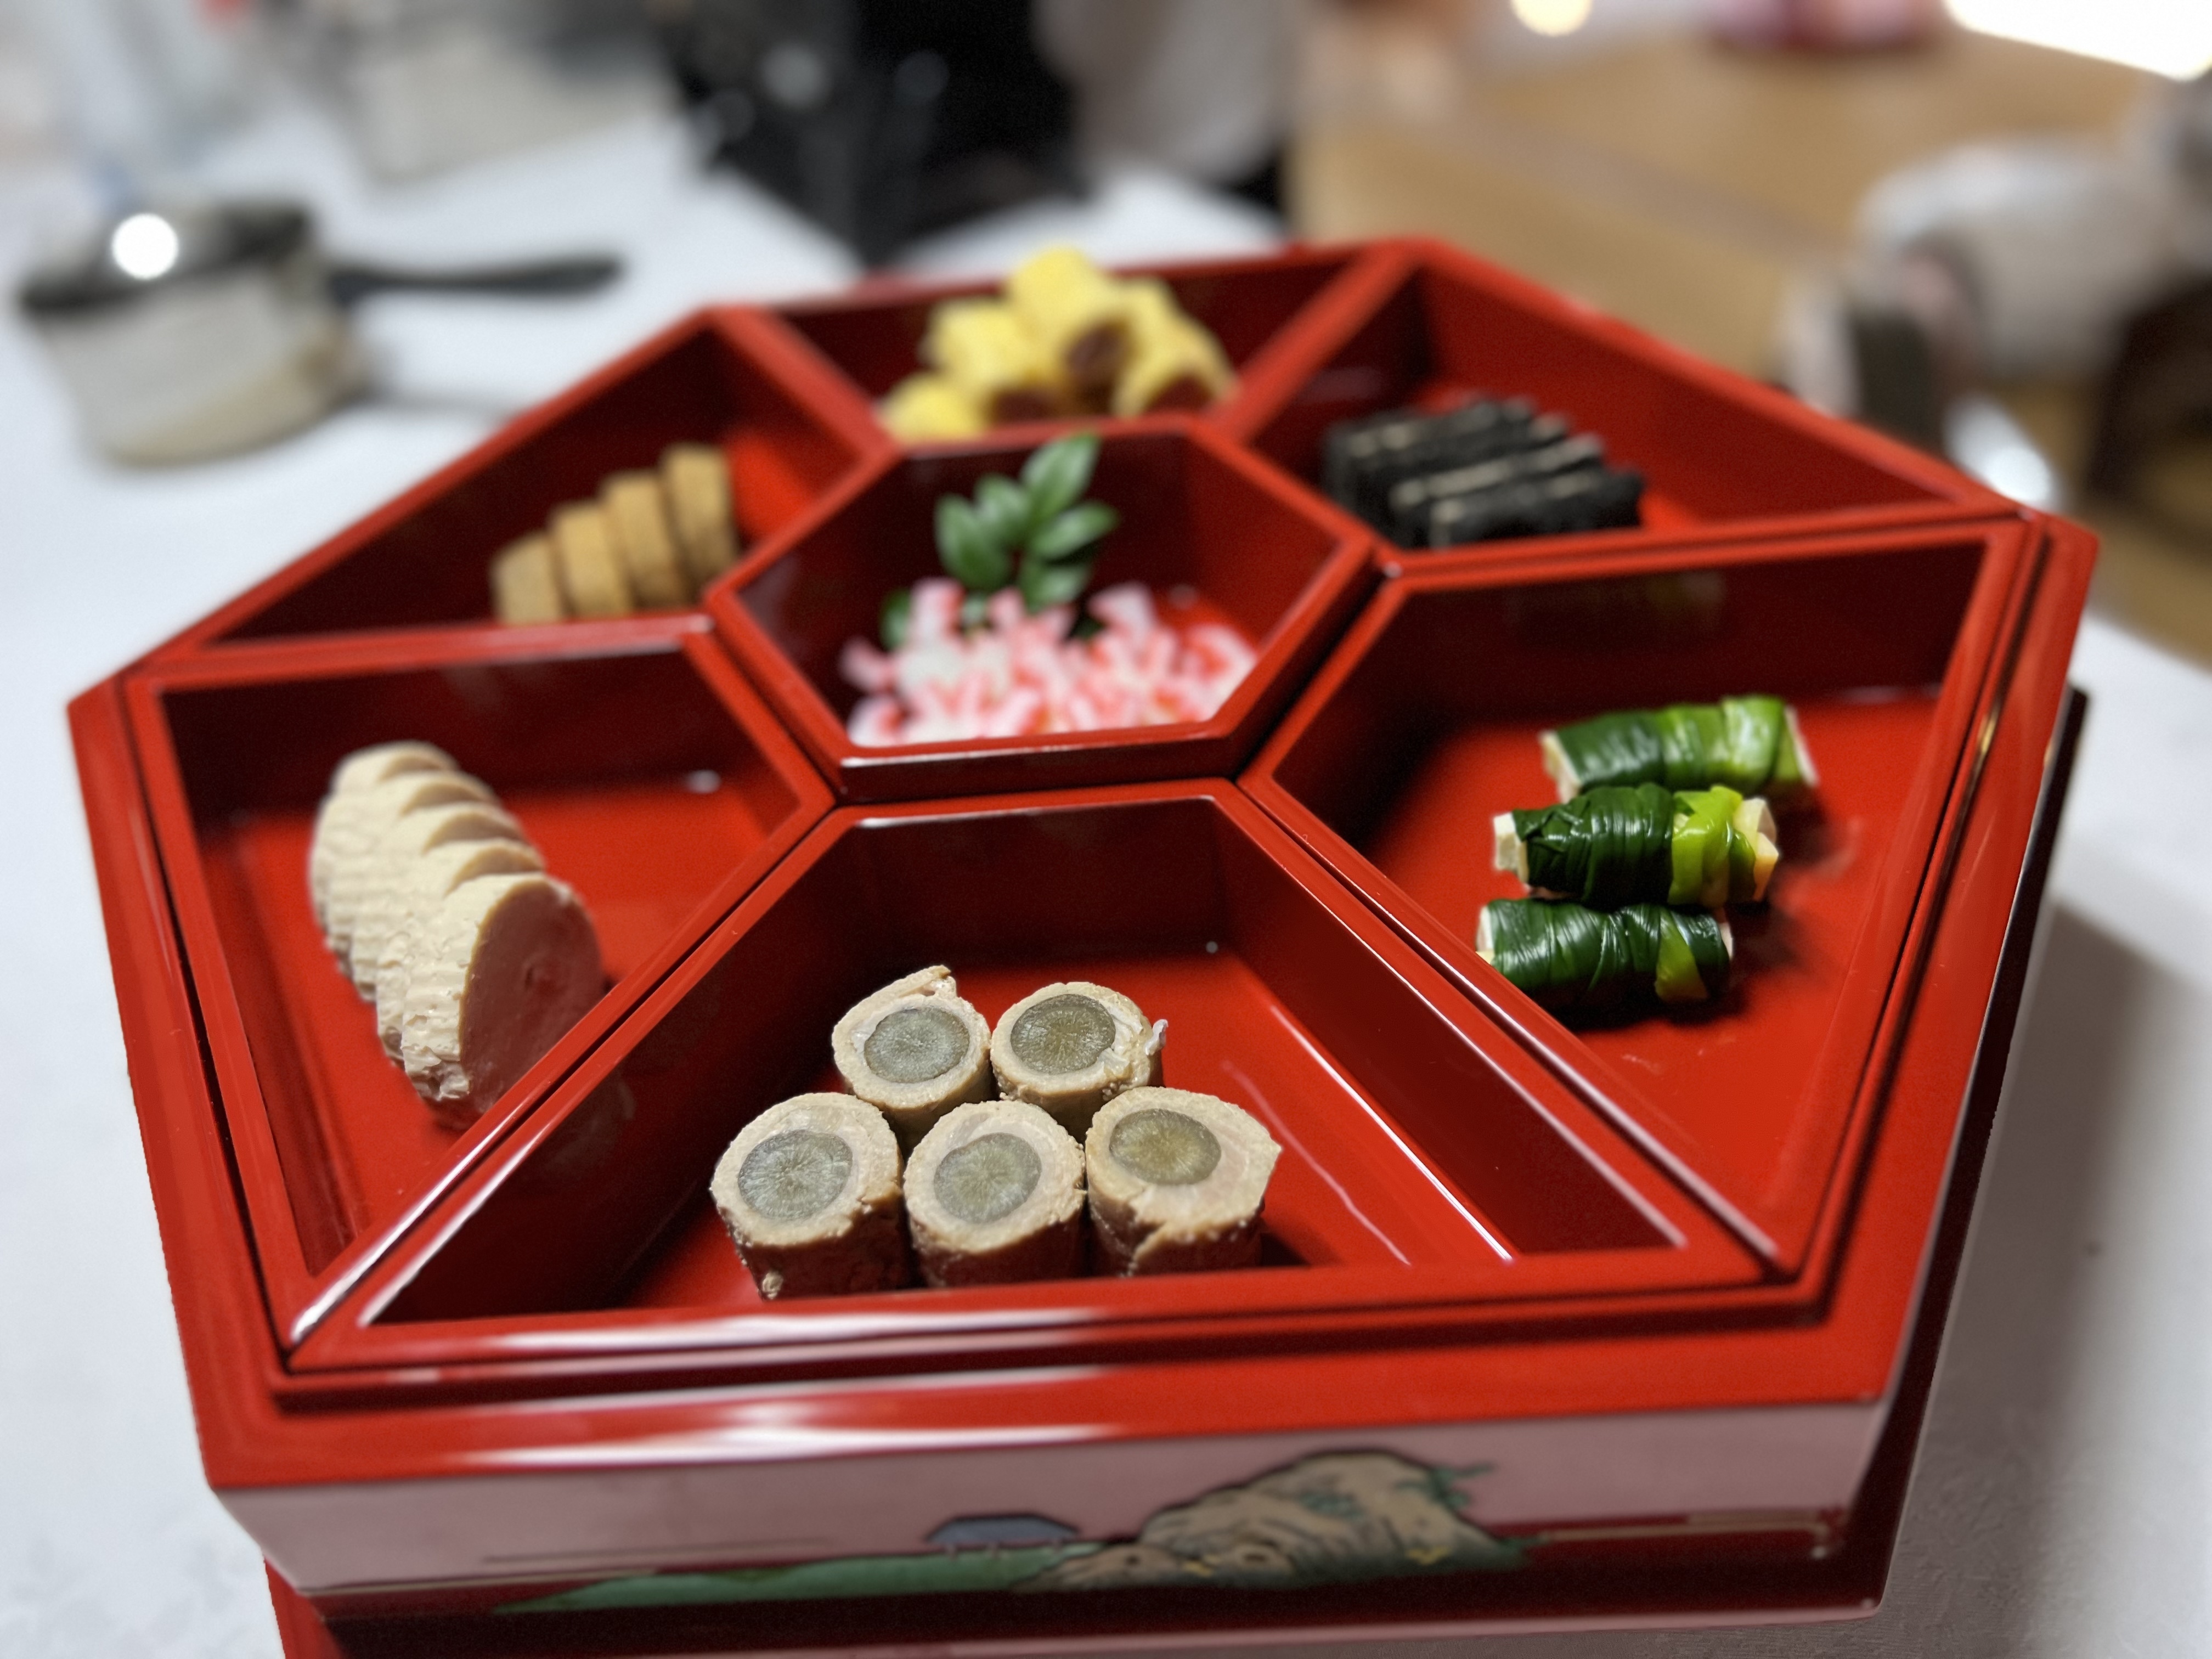 琉球料理伝承人が表現する「琉球宮廷料理」を
体験できるプランの提供を5月から実施